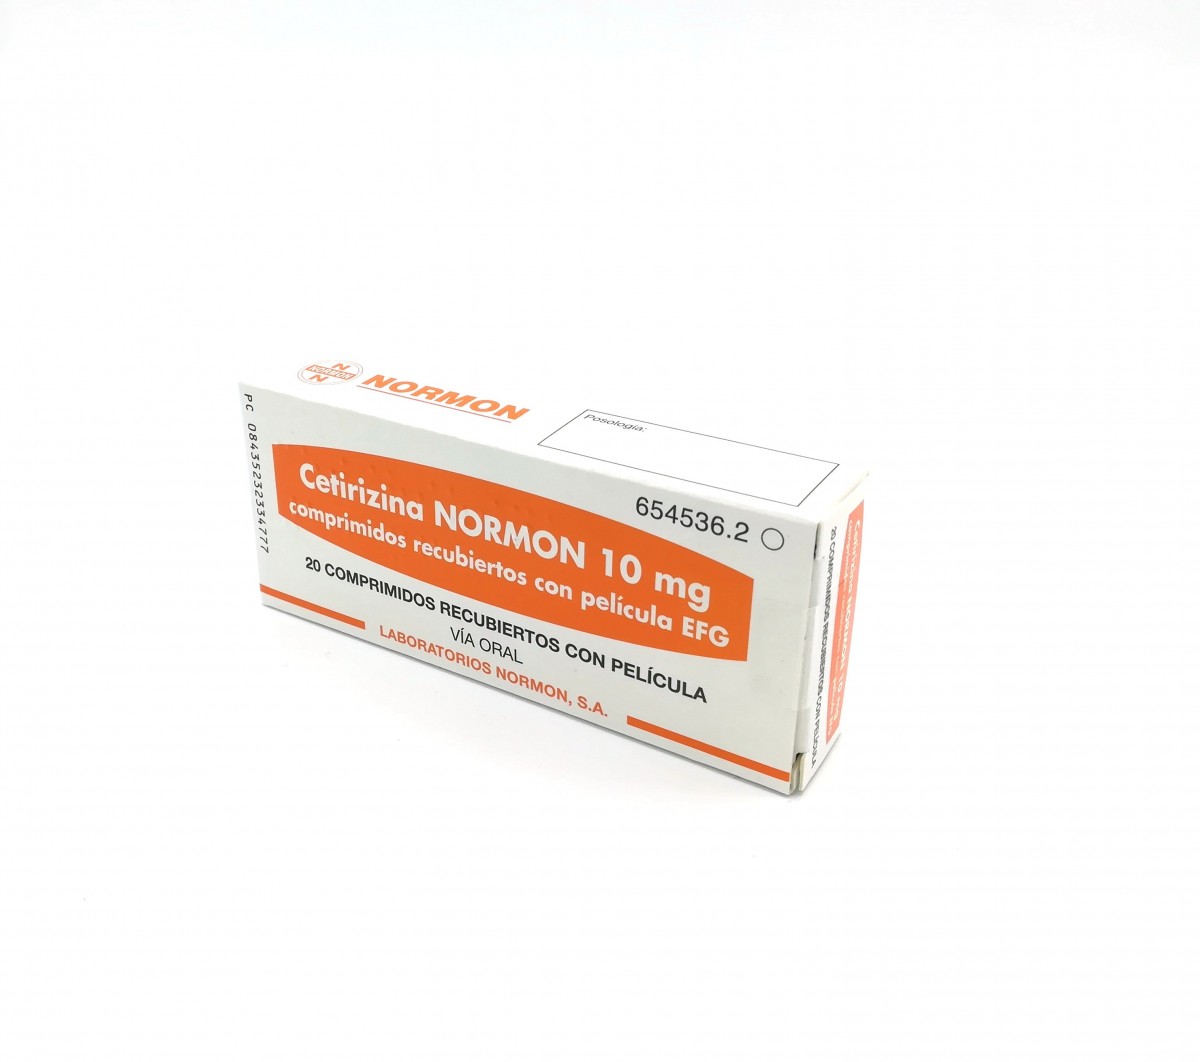 CETIRIZINA NORMON 10 mg COMPRIMIDOS RECUBIERTOS CON  PELICULA EFG, 20 comprimidos fotografía del envase.